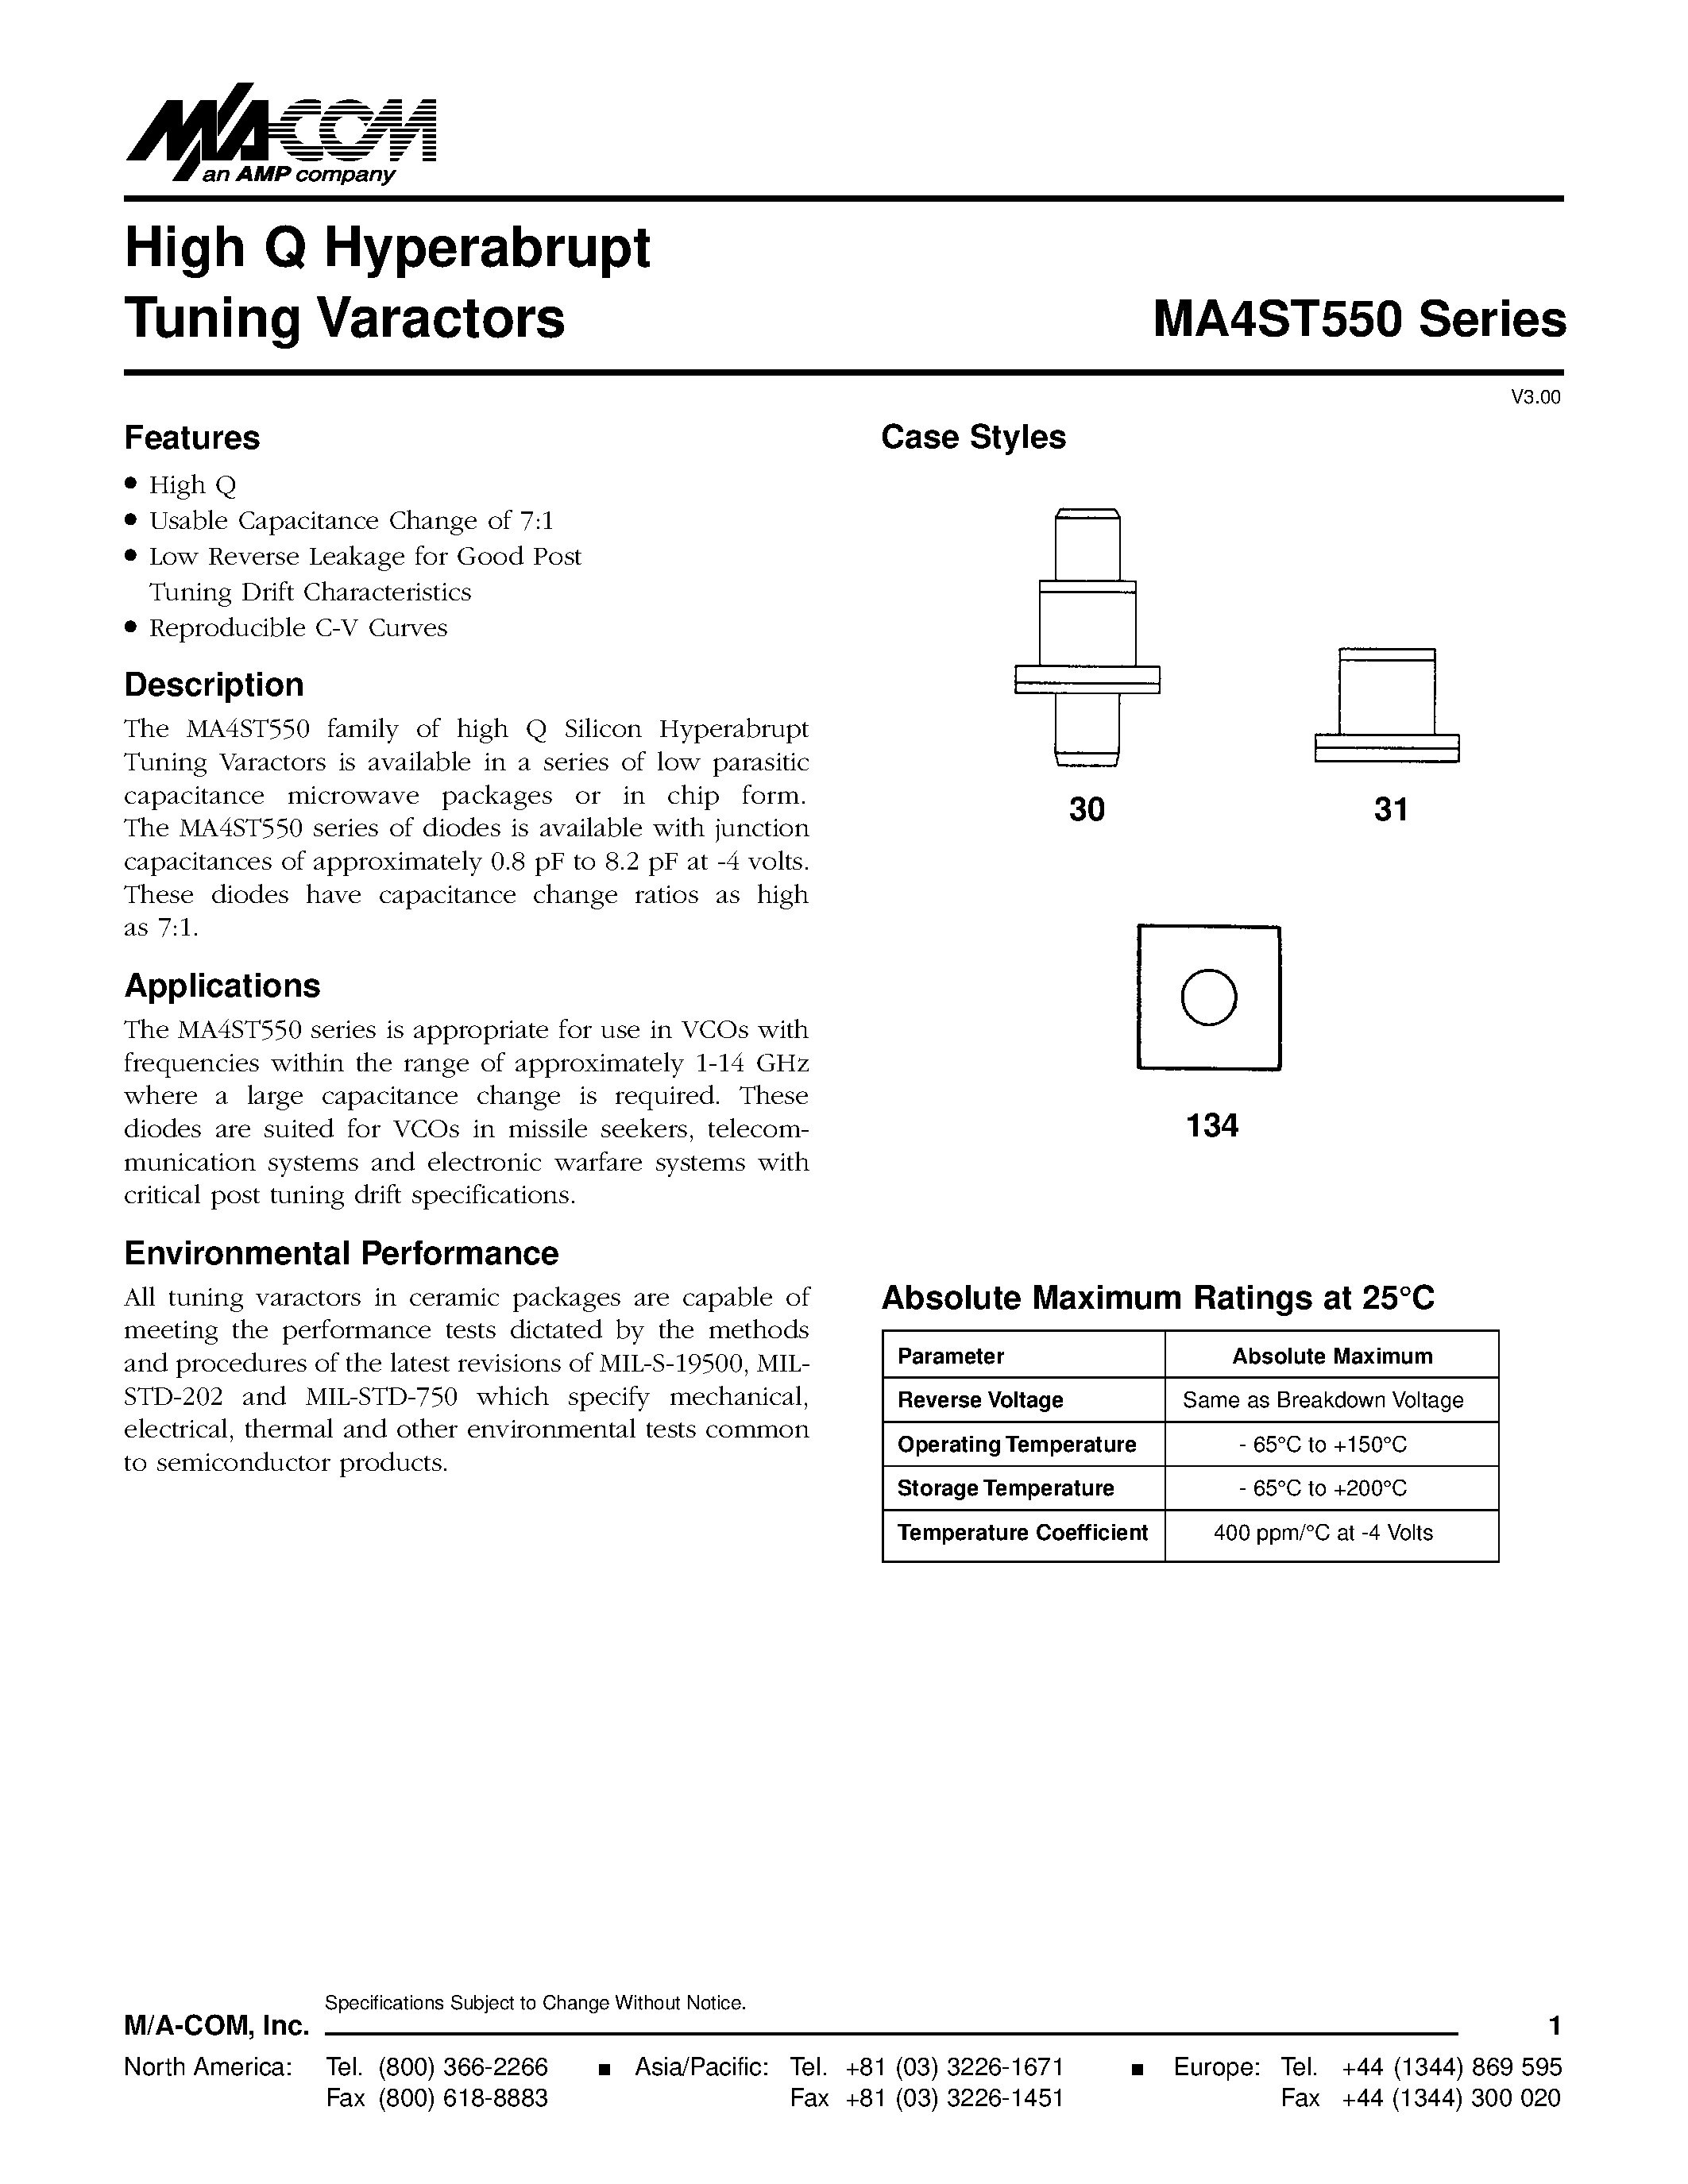 Даташит MA4ST560 - High Q Hyperabrupt Tuning Varactors страница 1